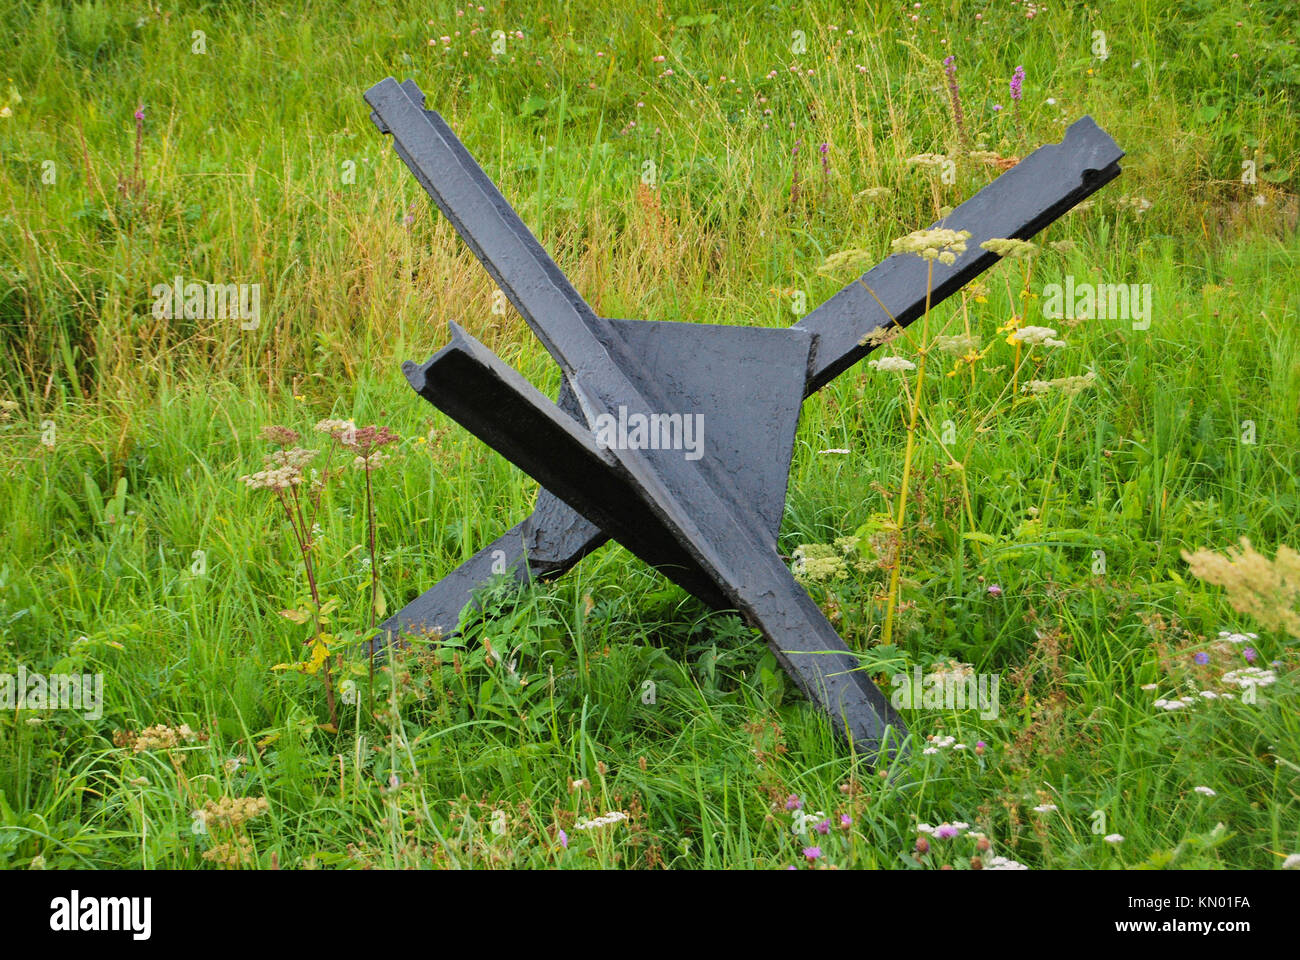 Un hérisson antichars noir de la guerre se tient sur l'herbe verte. Le concept de la guerre et de la paix. Banque D'Images